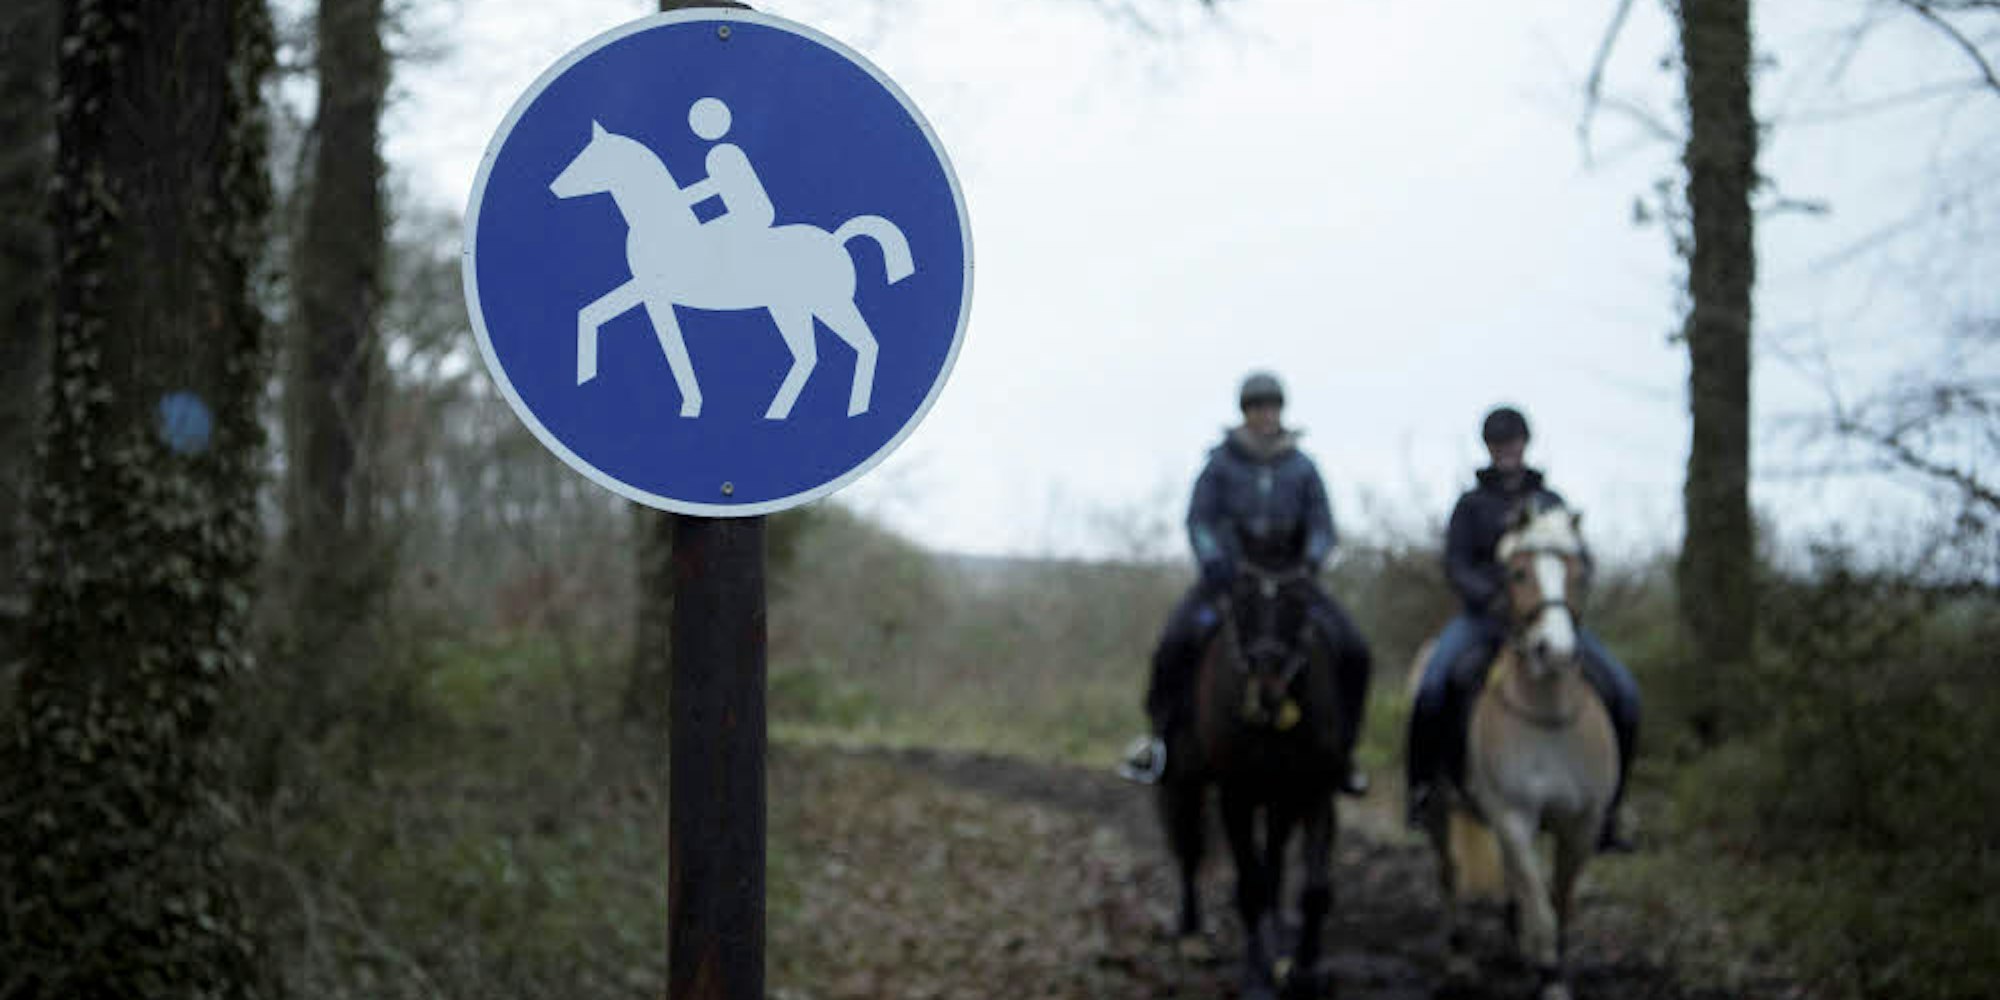 Die mit dem runden, blauen Schild gekennzeichneten Reitwege dürfen nur von Reitern und ihren Pferden genutzt werden.